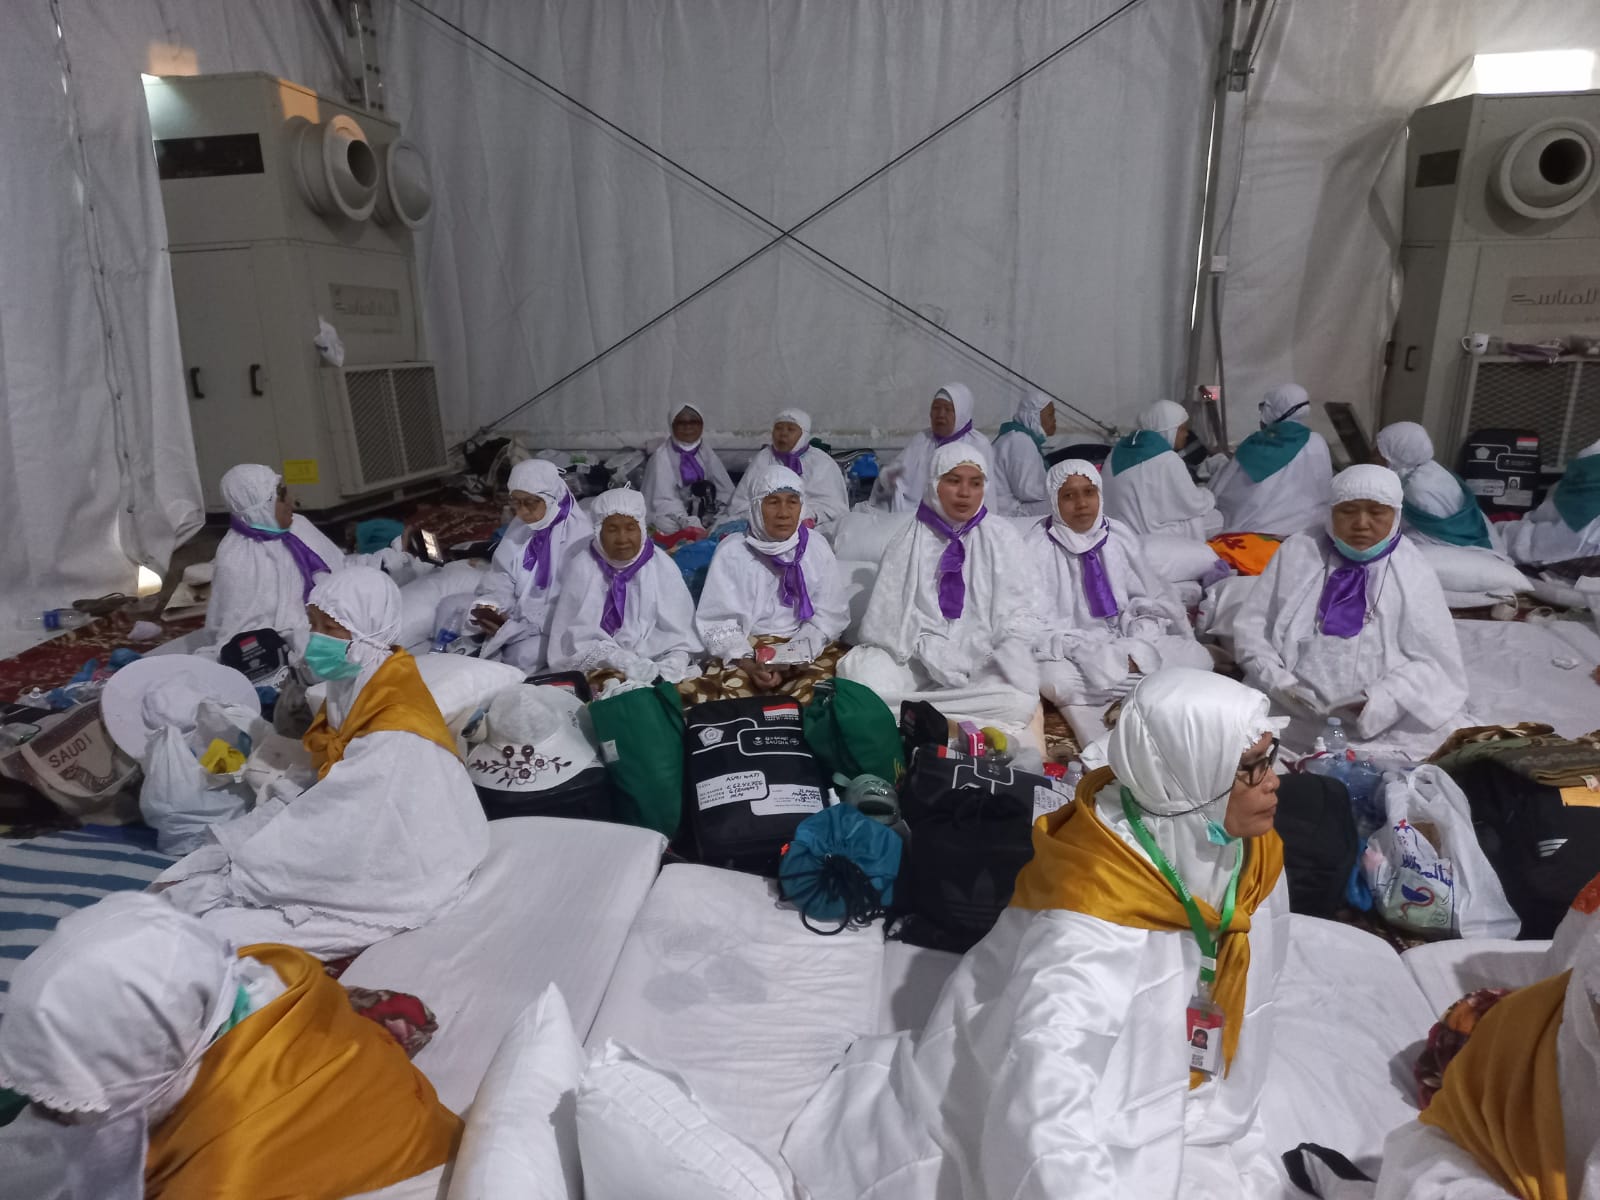 Pemkot Prabumulih Siapkan 3 Bus Penjemputan Jemaah Haji